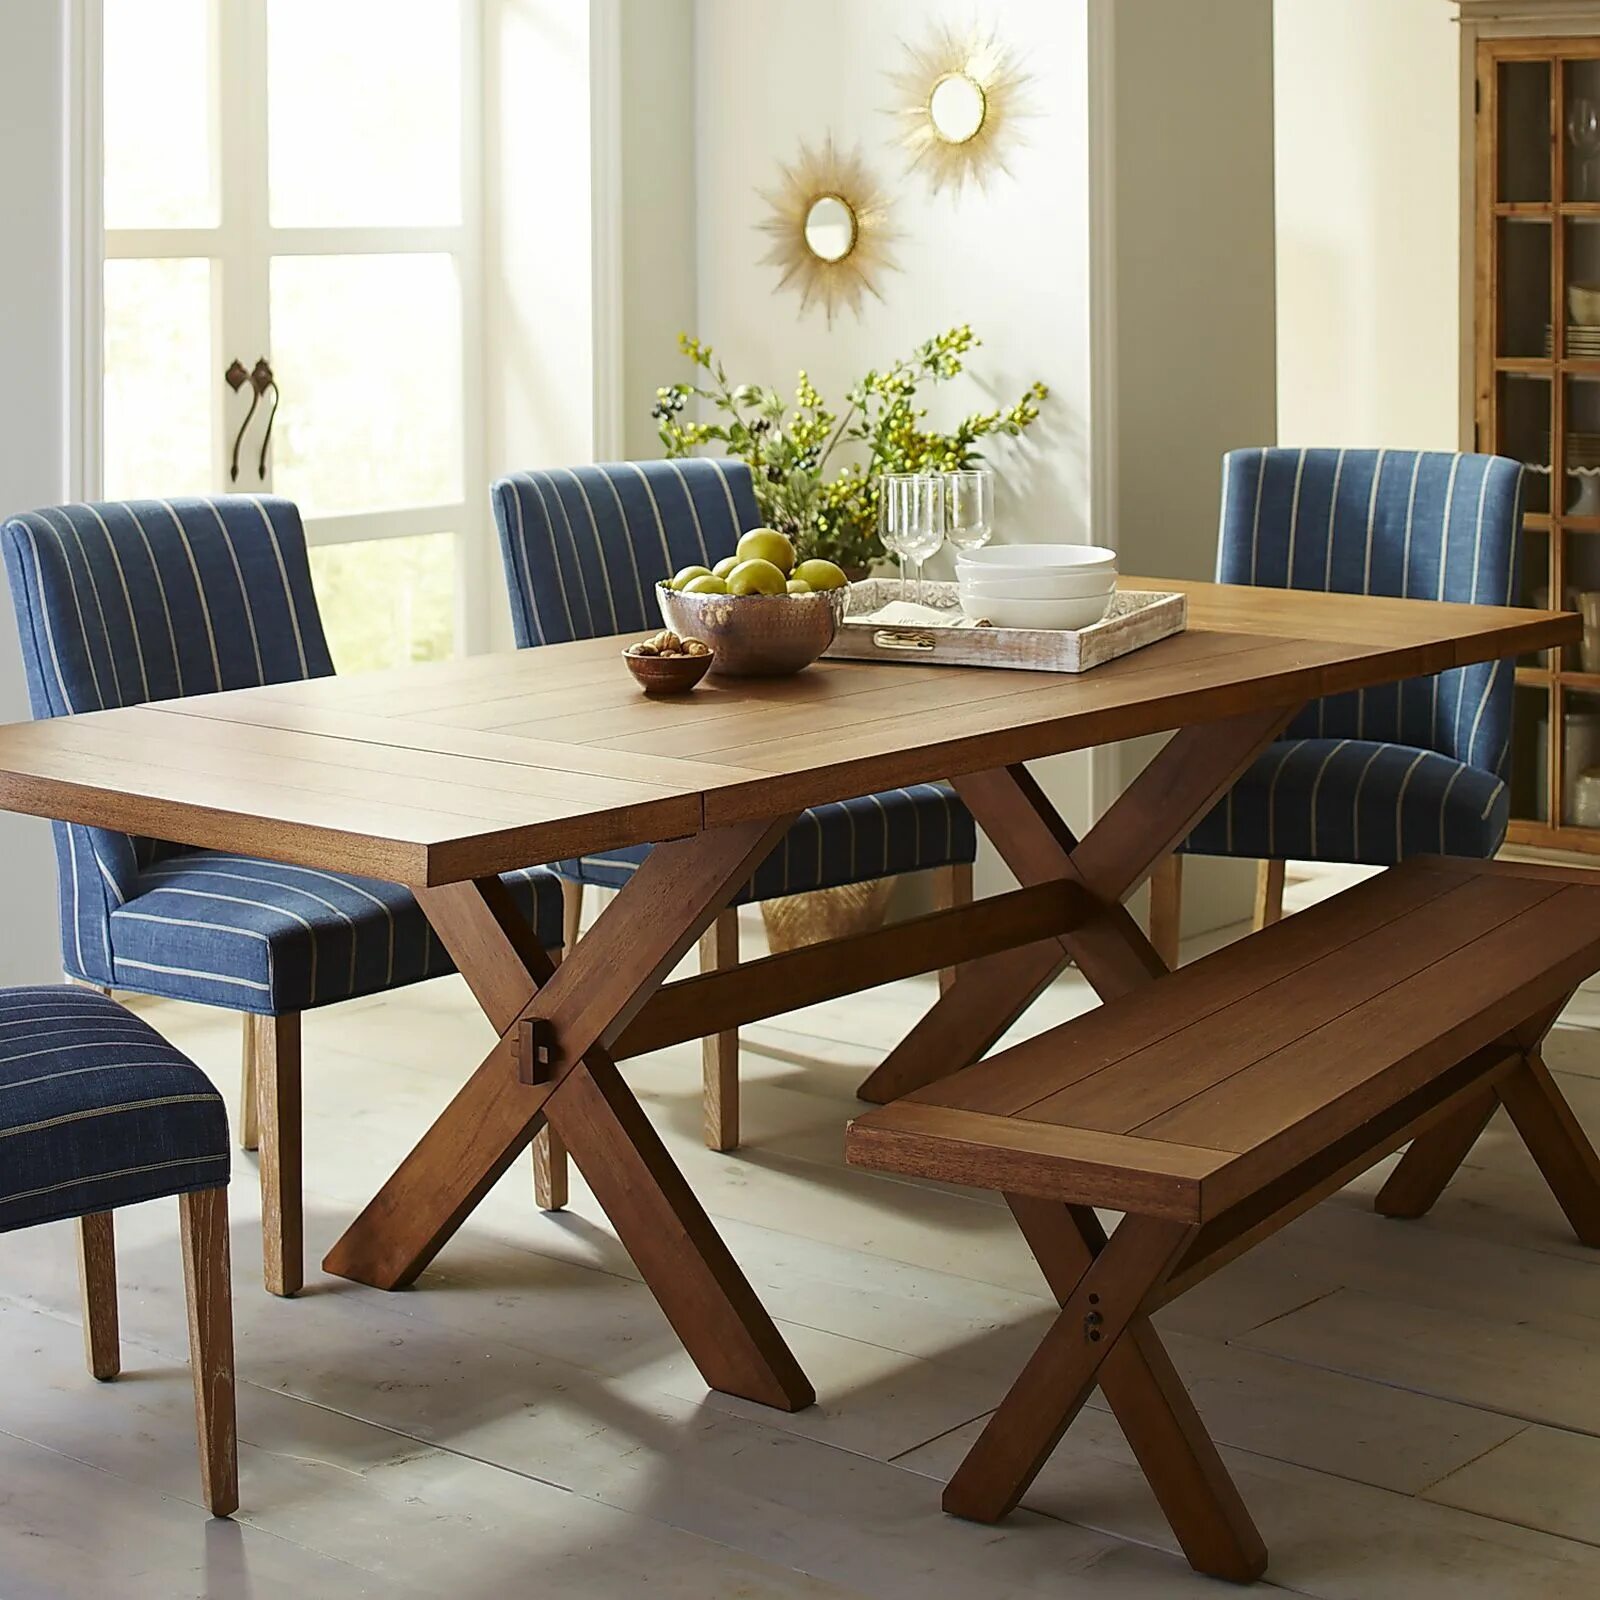 Лучшие картинки стола. Круглый стол AMCLASSIC aim Dining Table. Twisted Dining Table 220см. Обеденные столы и стулья. Обеденный стол на веранде.